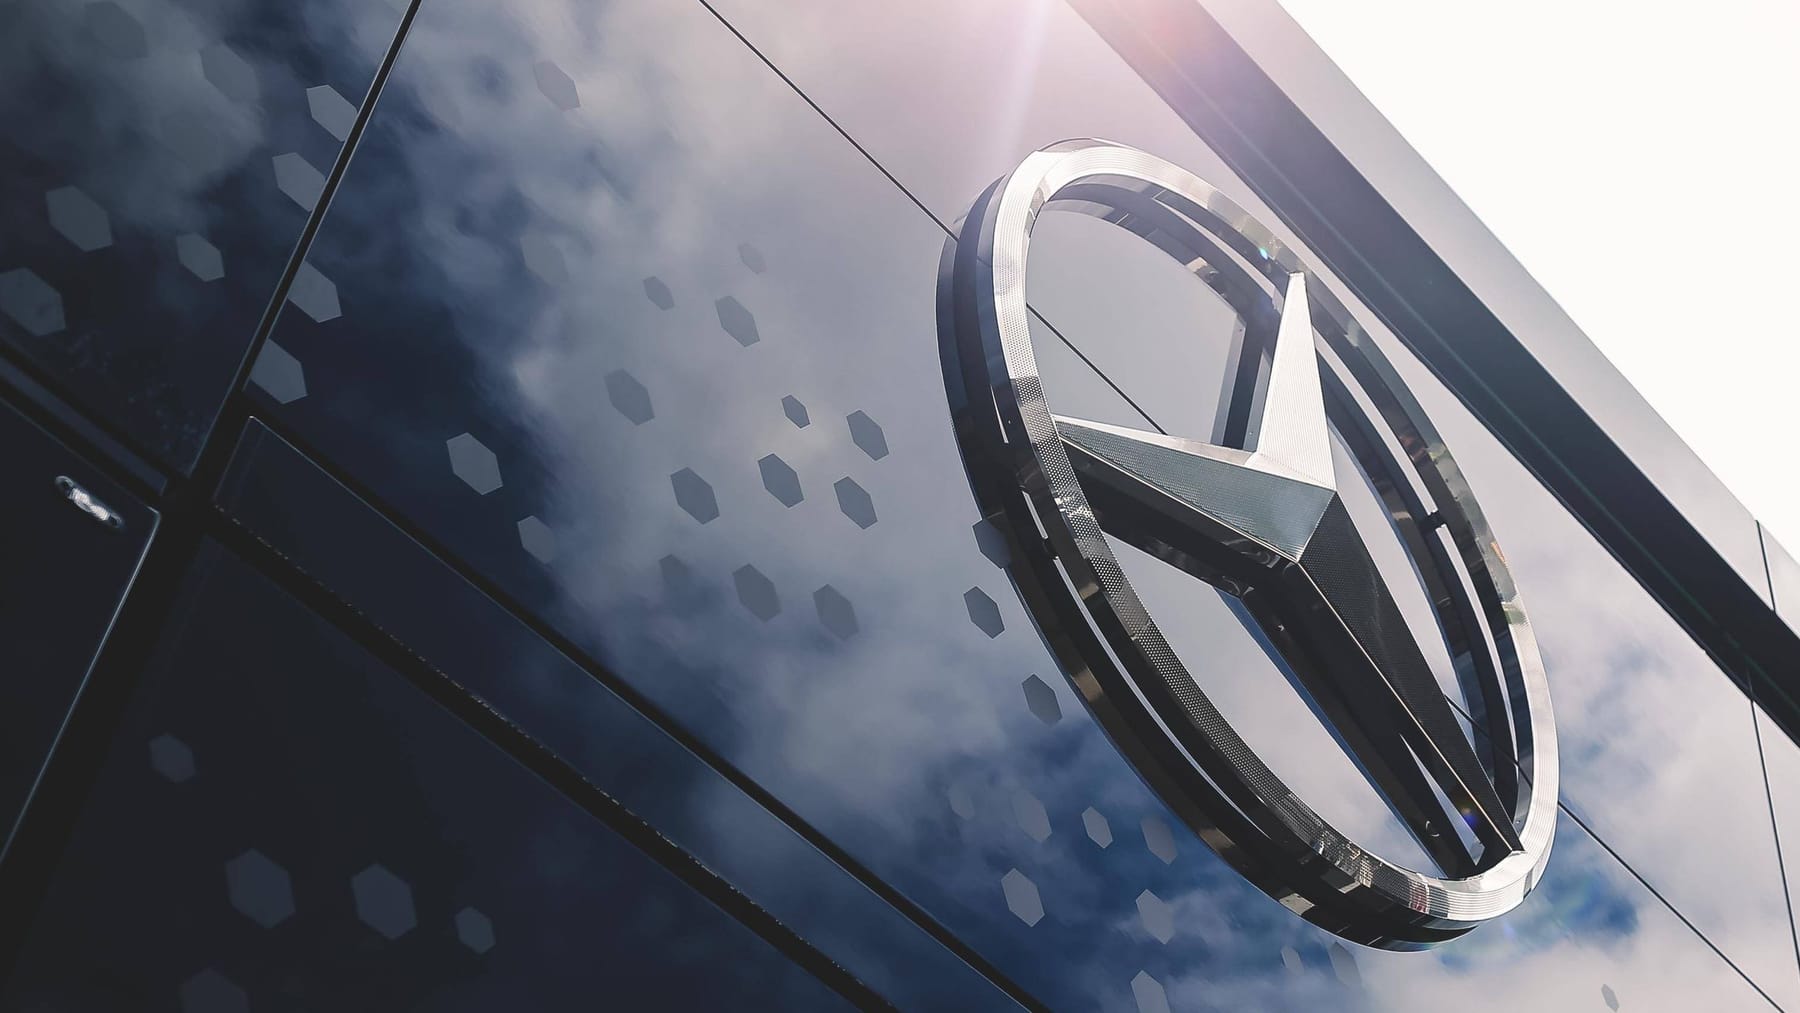 Mercedes eliminuje stałe ceny: rewolucja cenowa u producenta samochodów